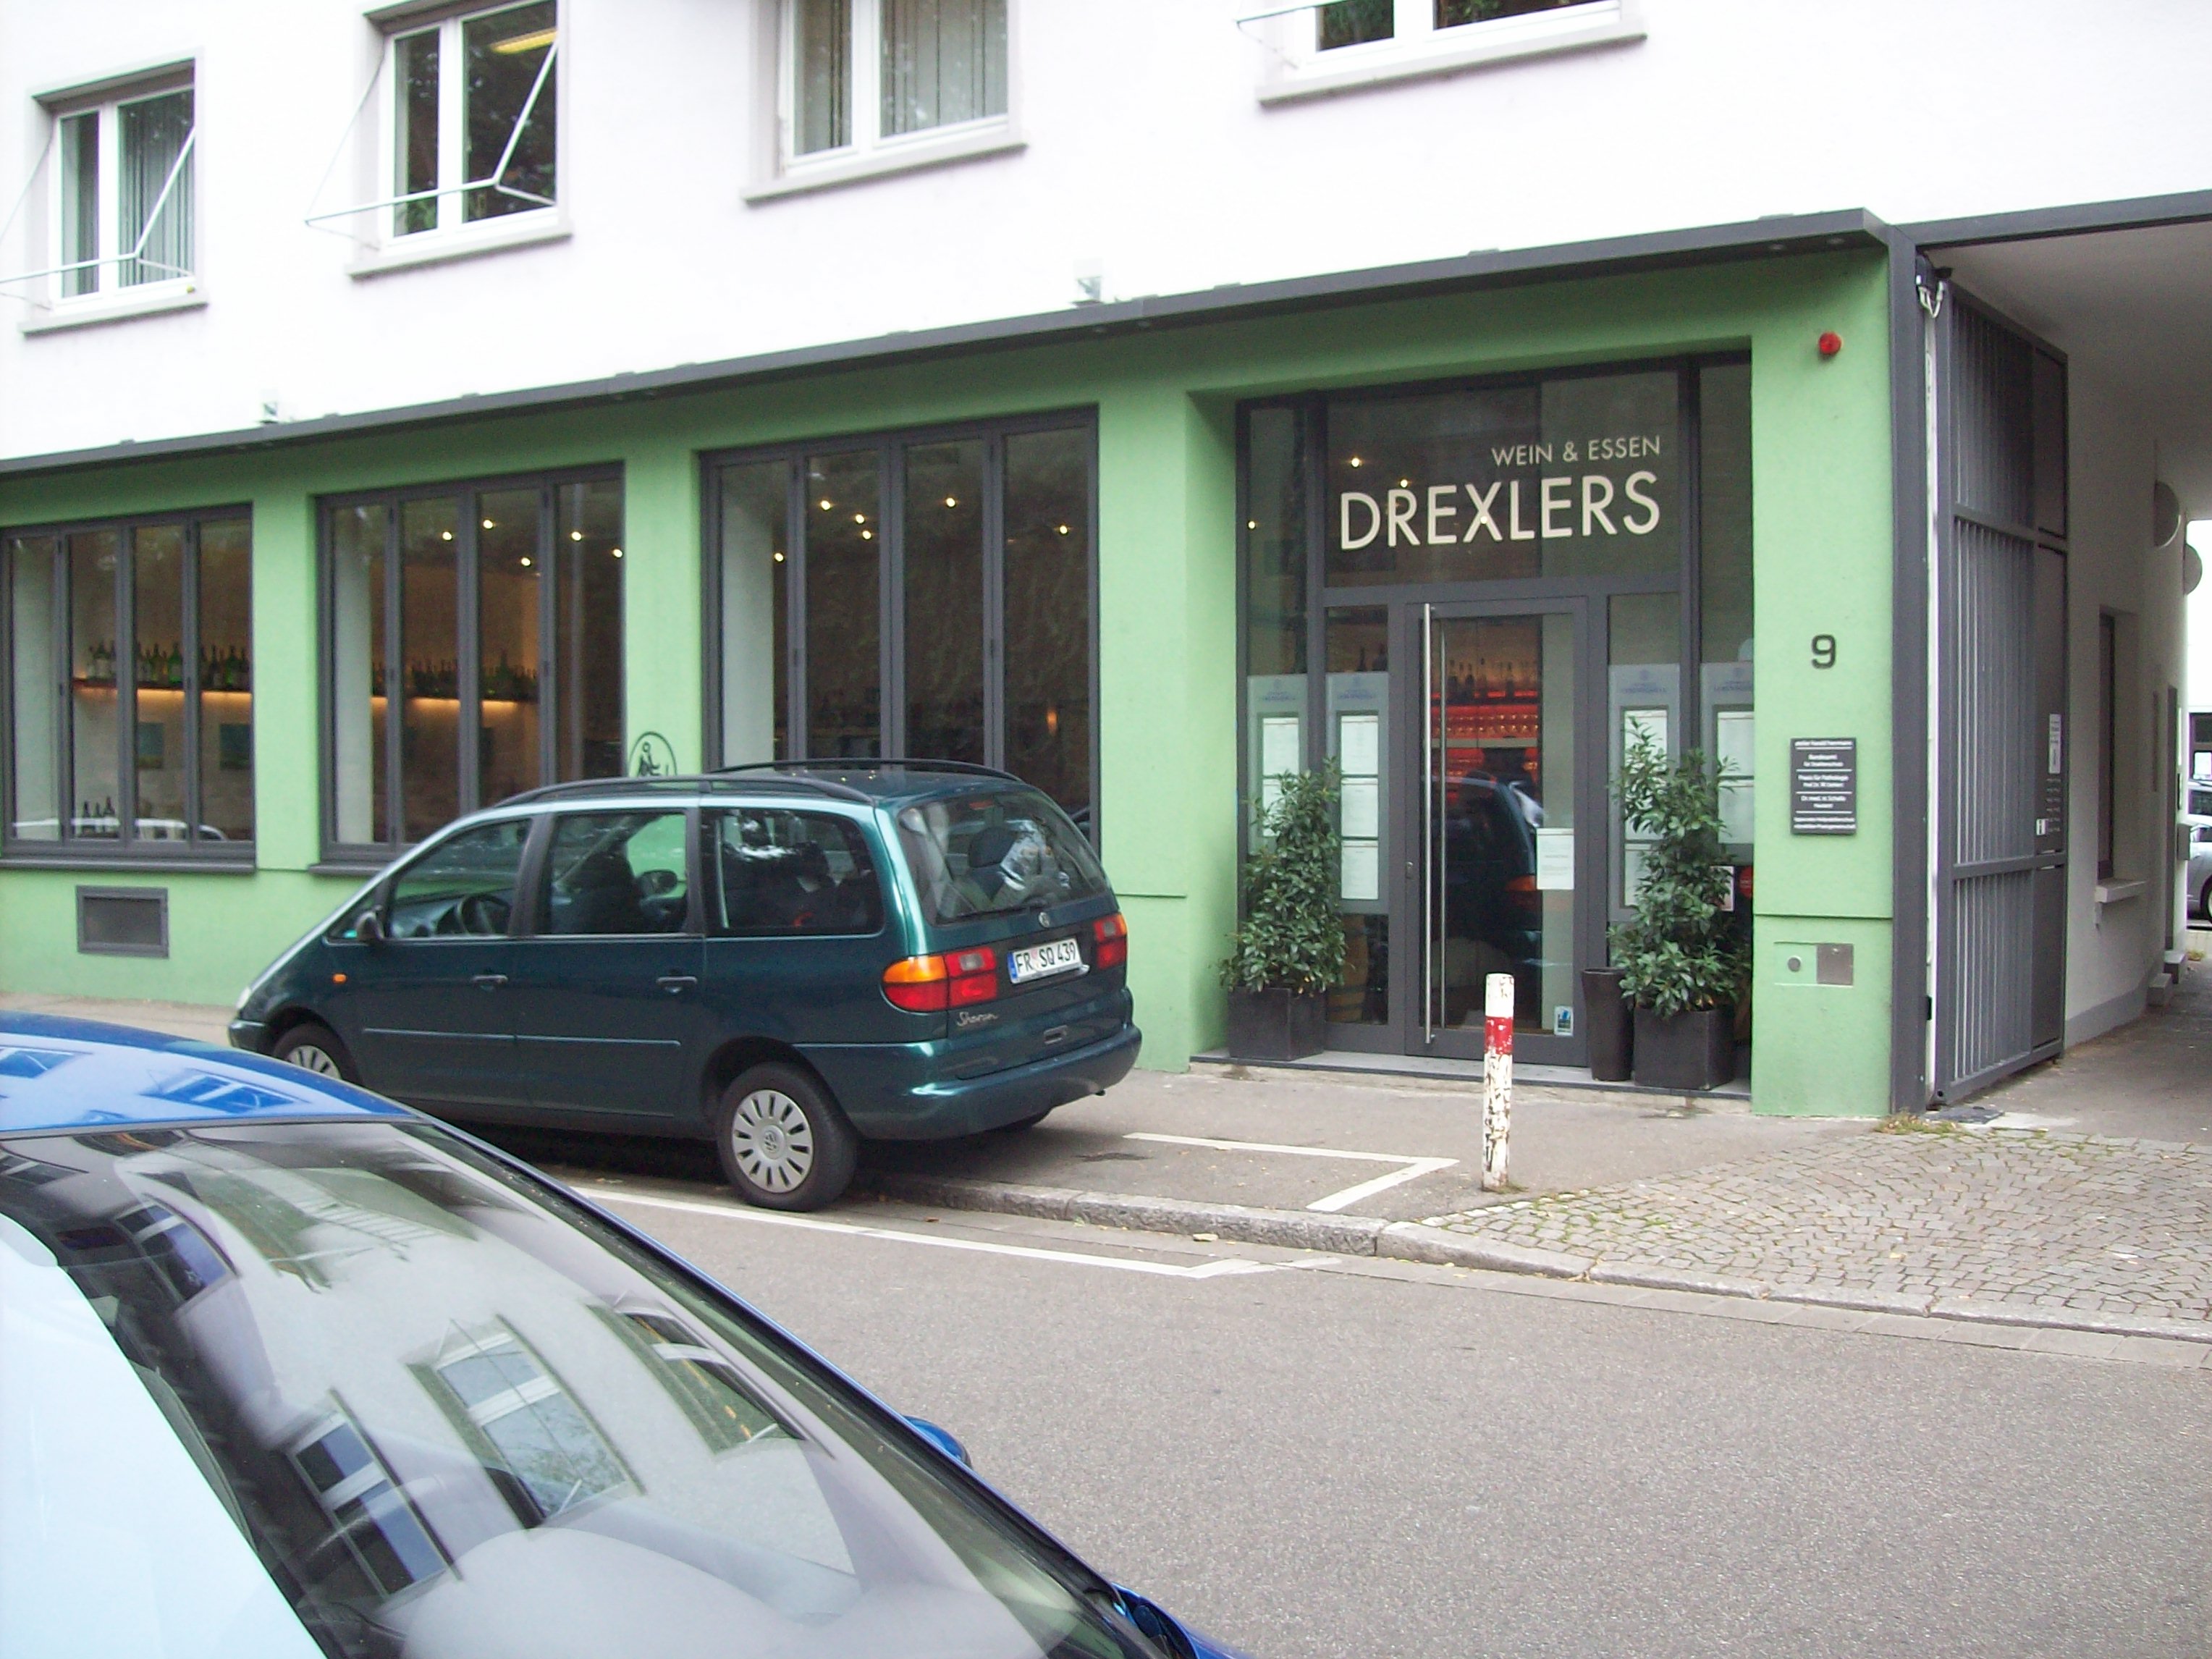 Bild 1 Drexlers Restaurant in Freiburg im Breisgau